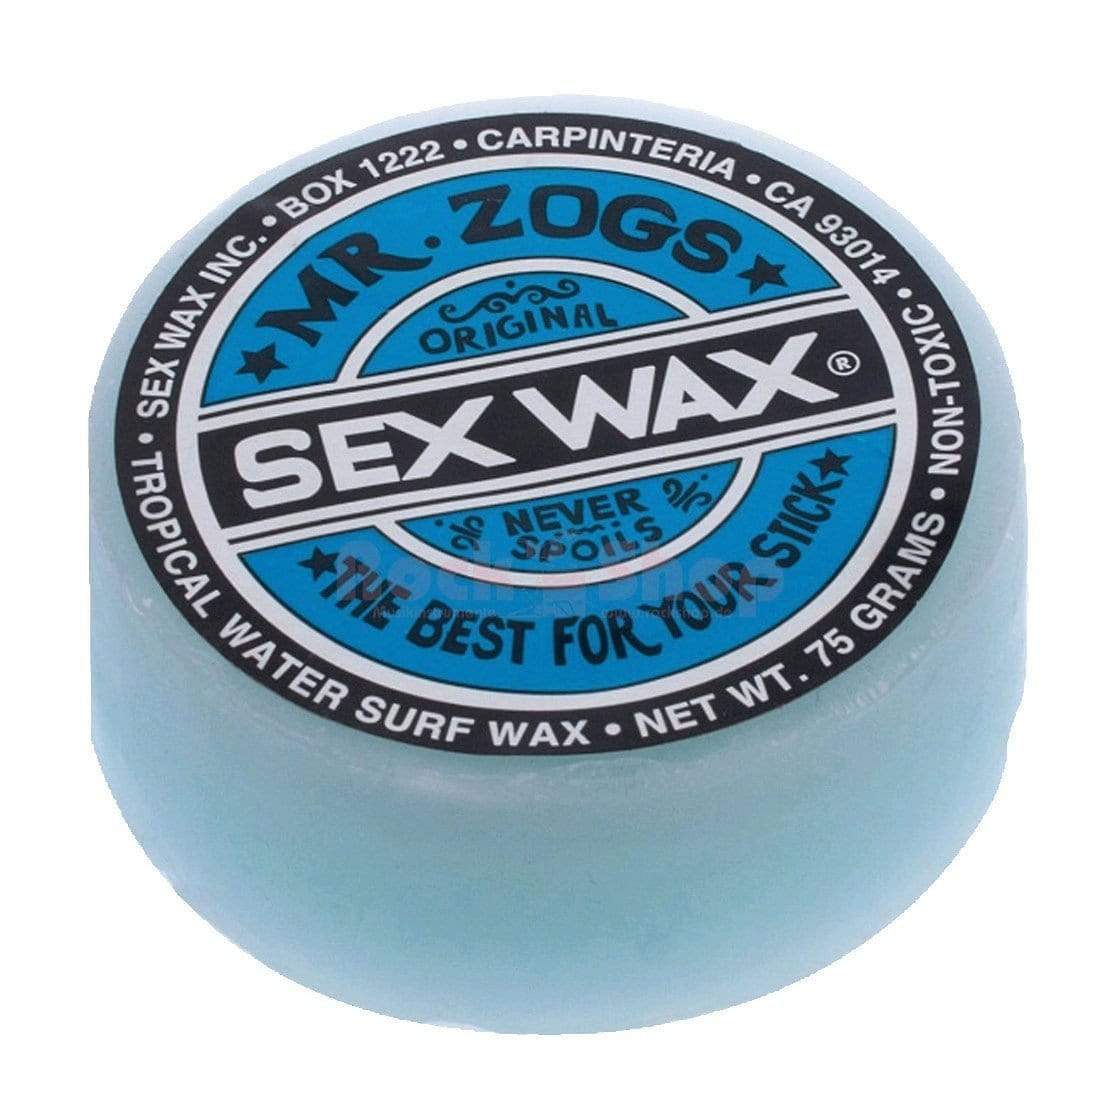 Sex Wax Drumstick Wax SW